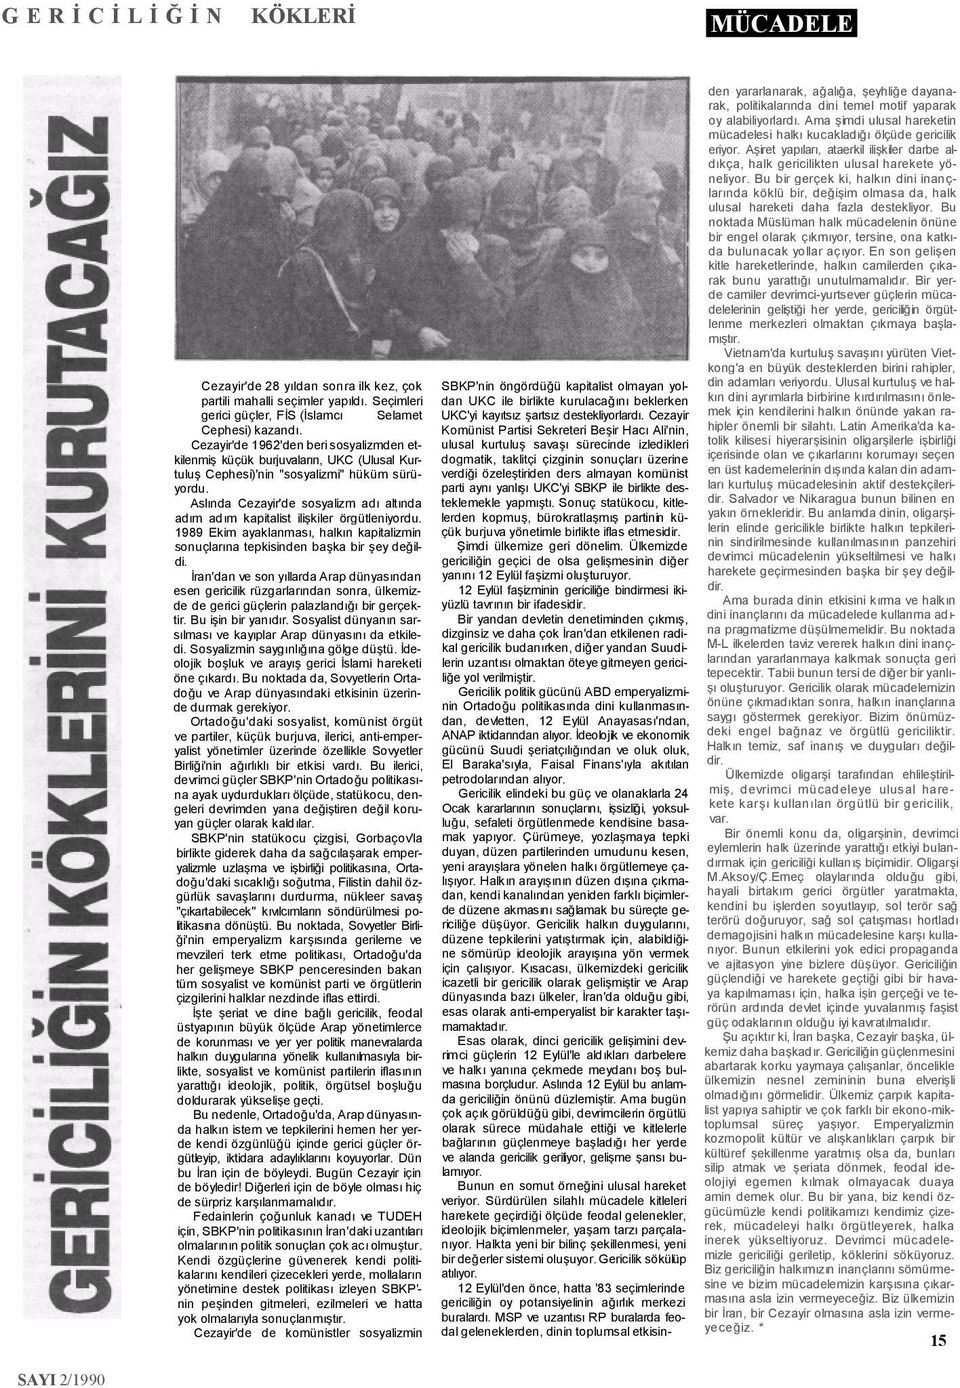 Aslında Cezayir'de sosyalizm adı altında adım adım kapitalist ilişkiler örgütleniyordu. 1989 Ekim ayaklanması, halkın kapitalizmin sonuçlarına tepkisinden başka bir şey değildi.